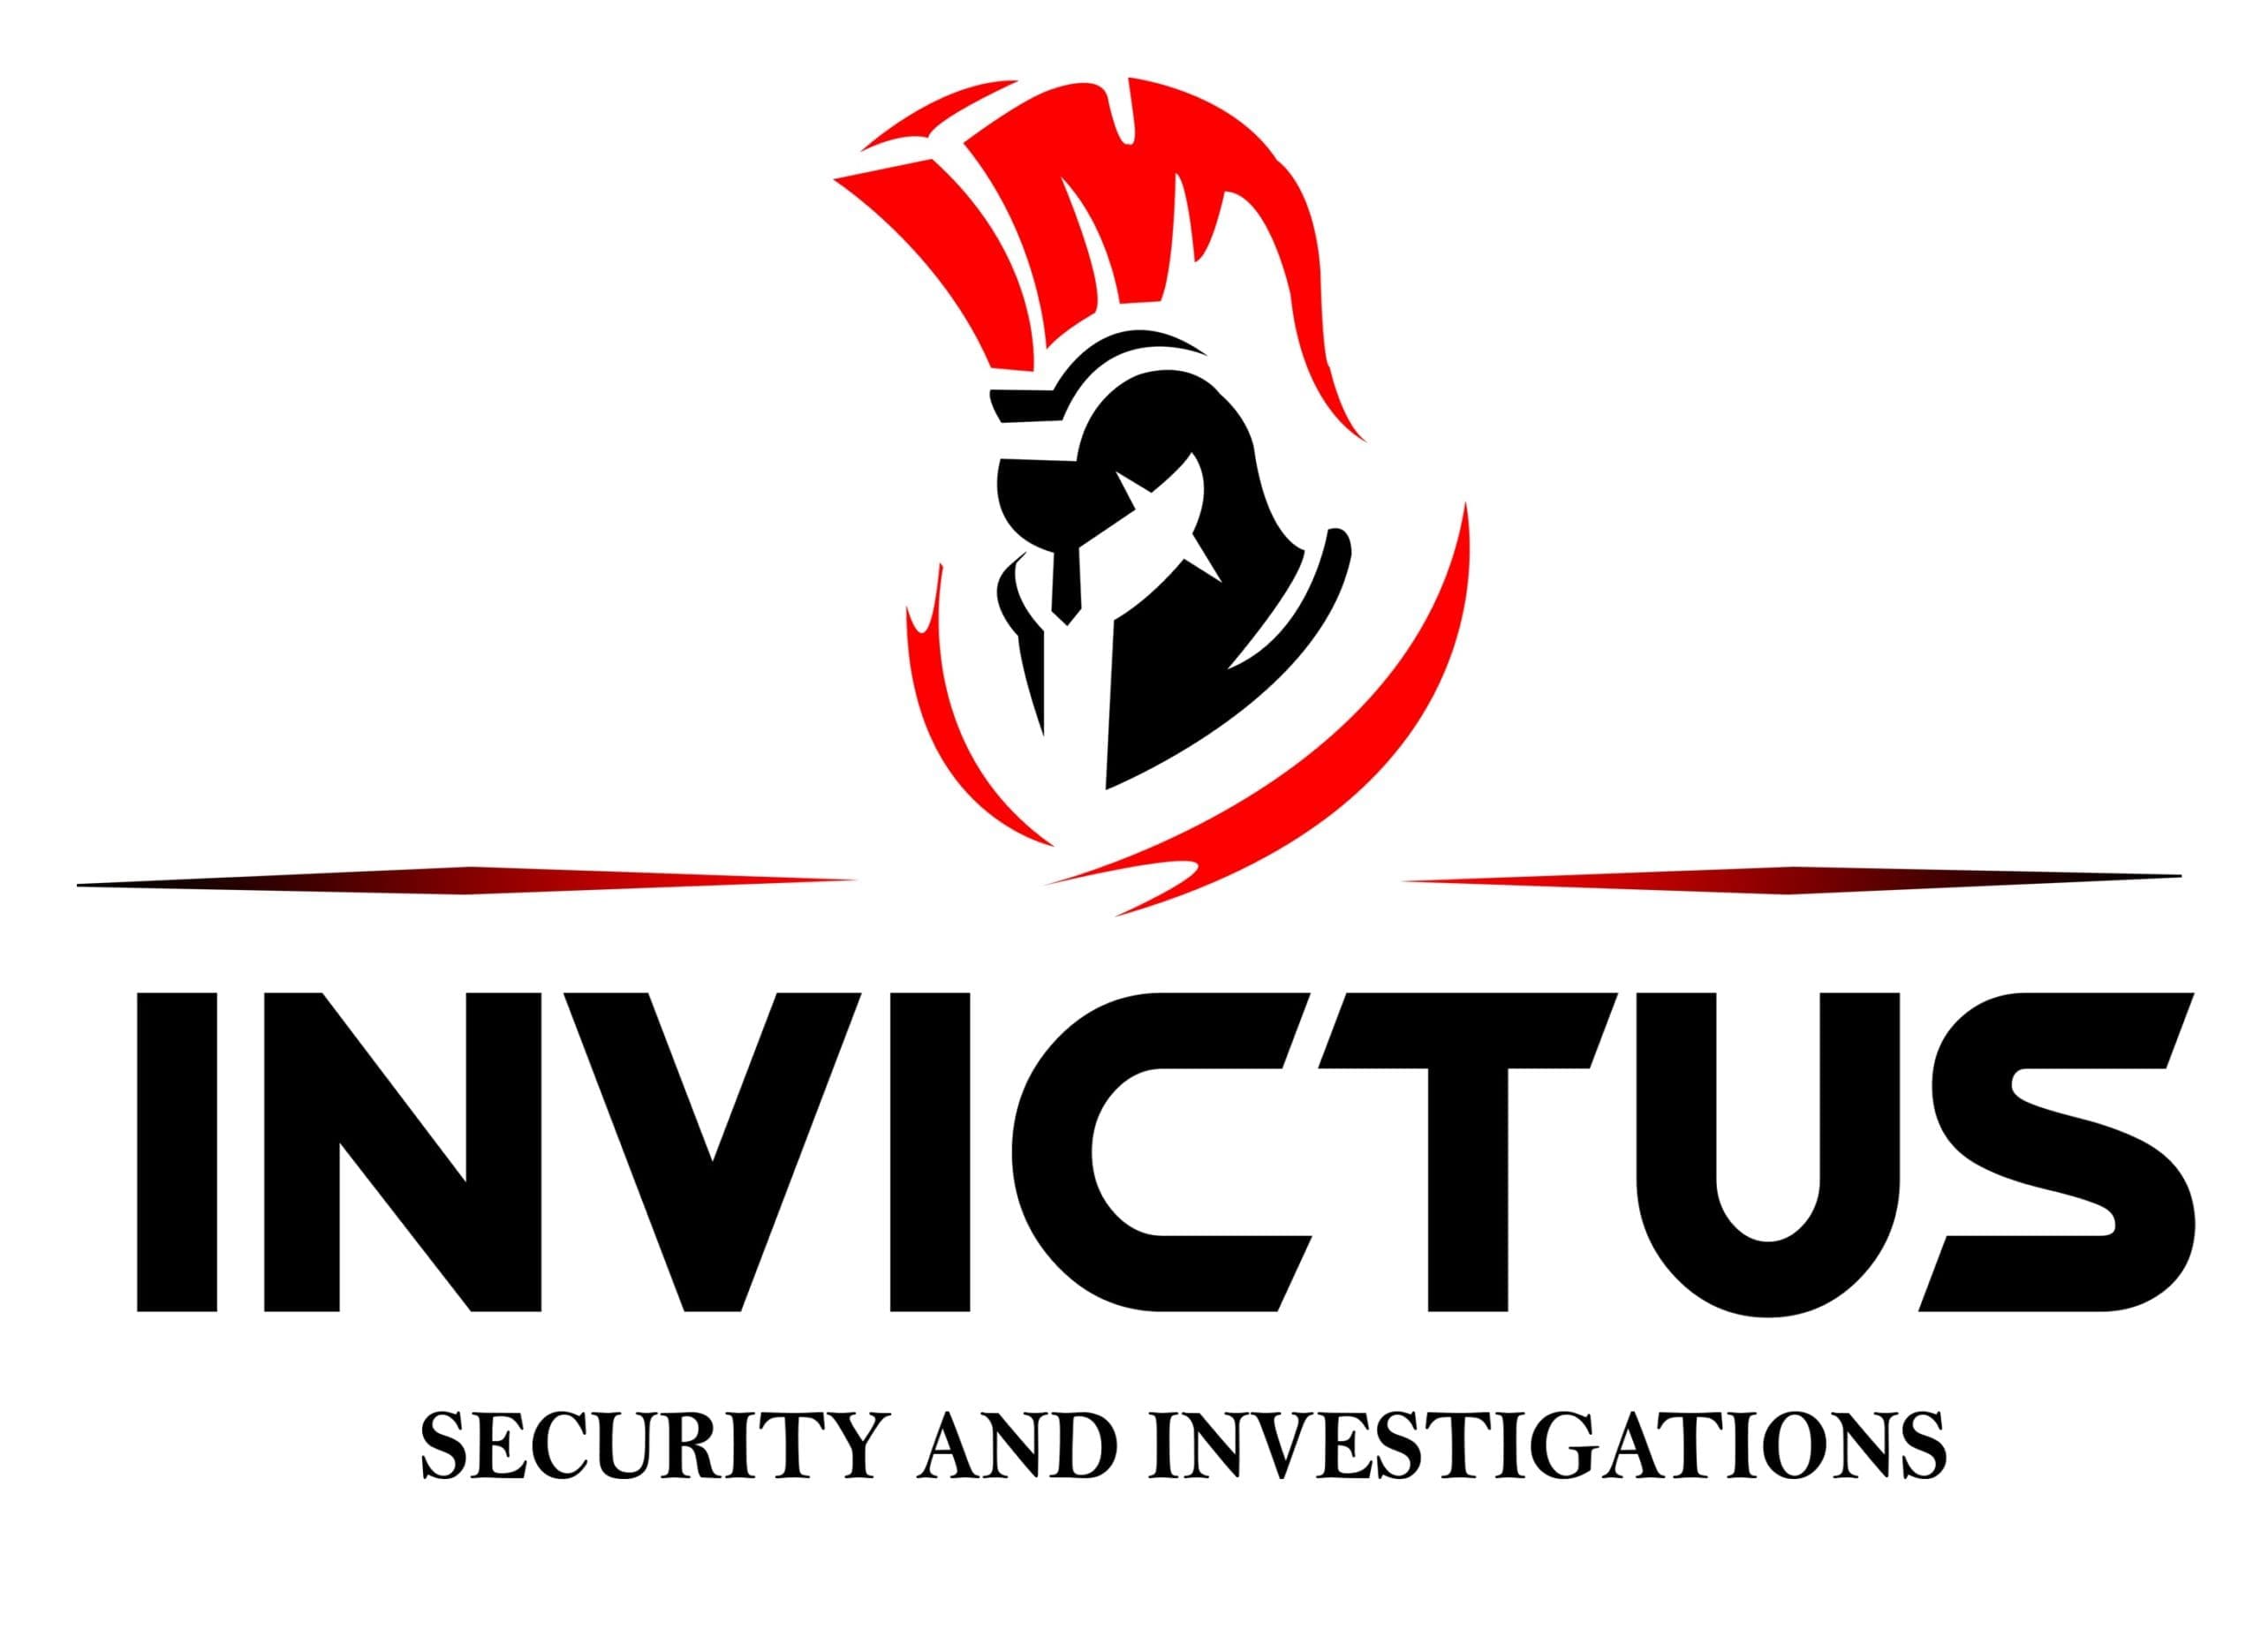 Invictus Security